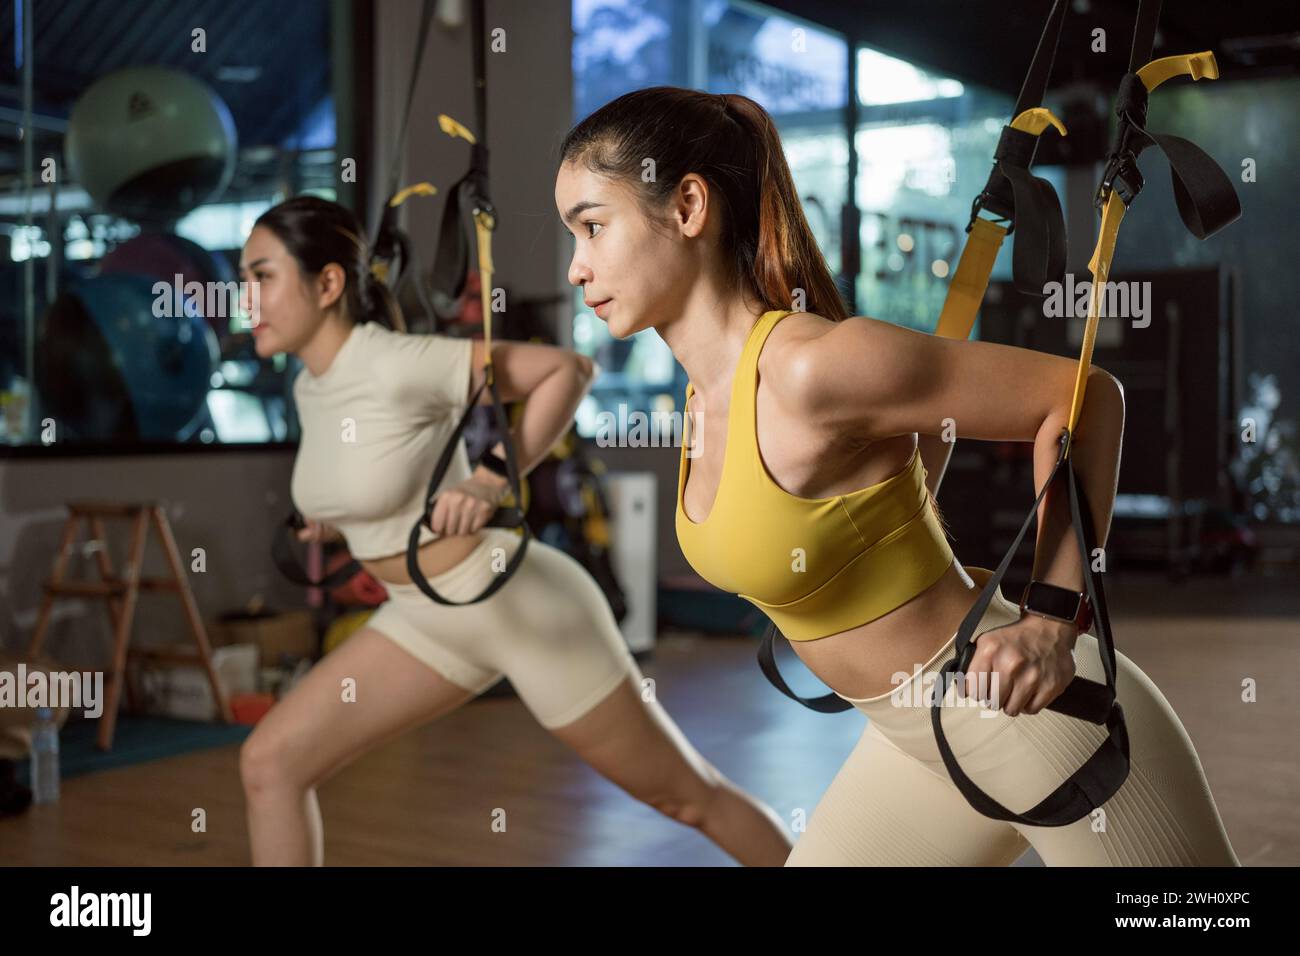 Asiatische Frau macht Liegestütze, Armtraining mit trx Fitnessgurten im Fitnessstudio. Stockfoto